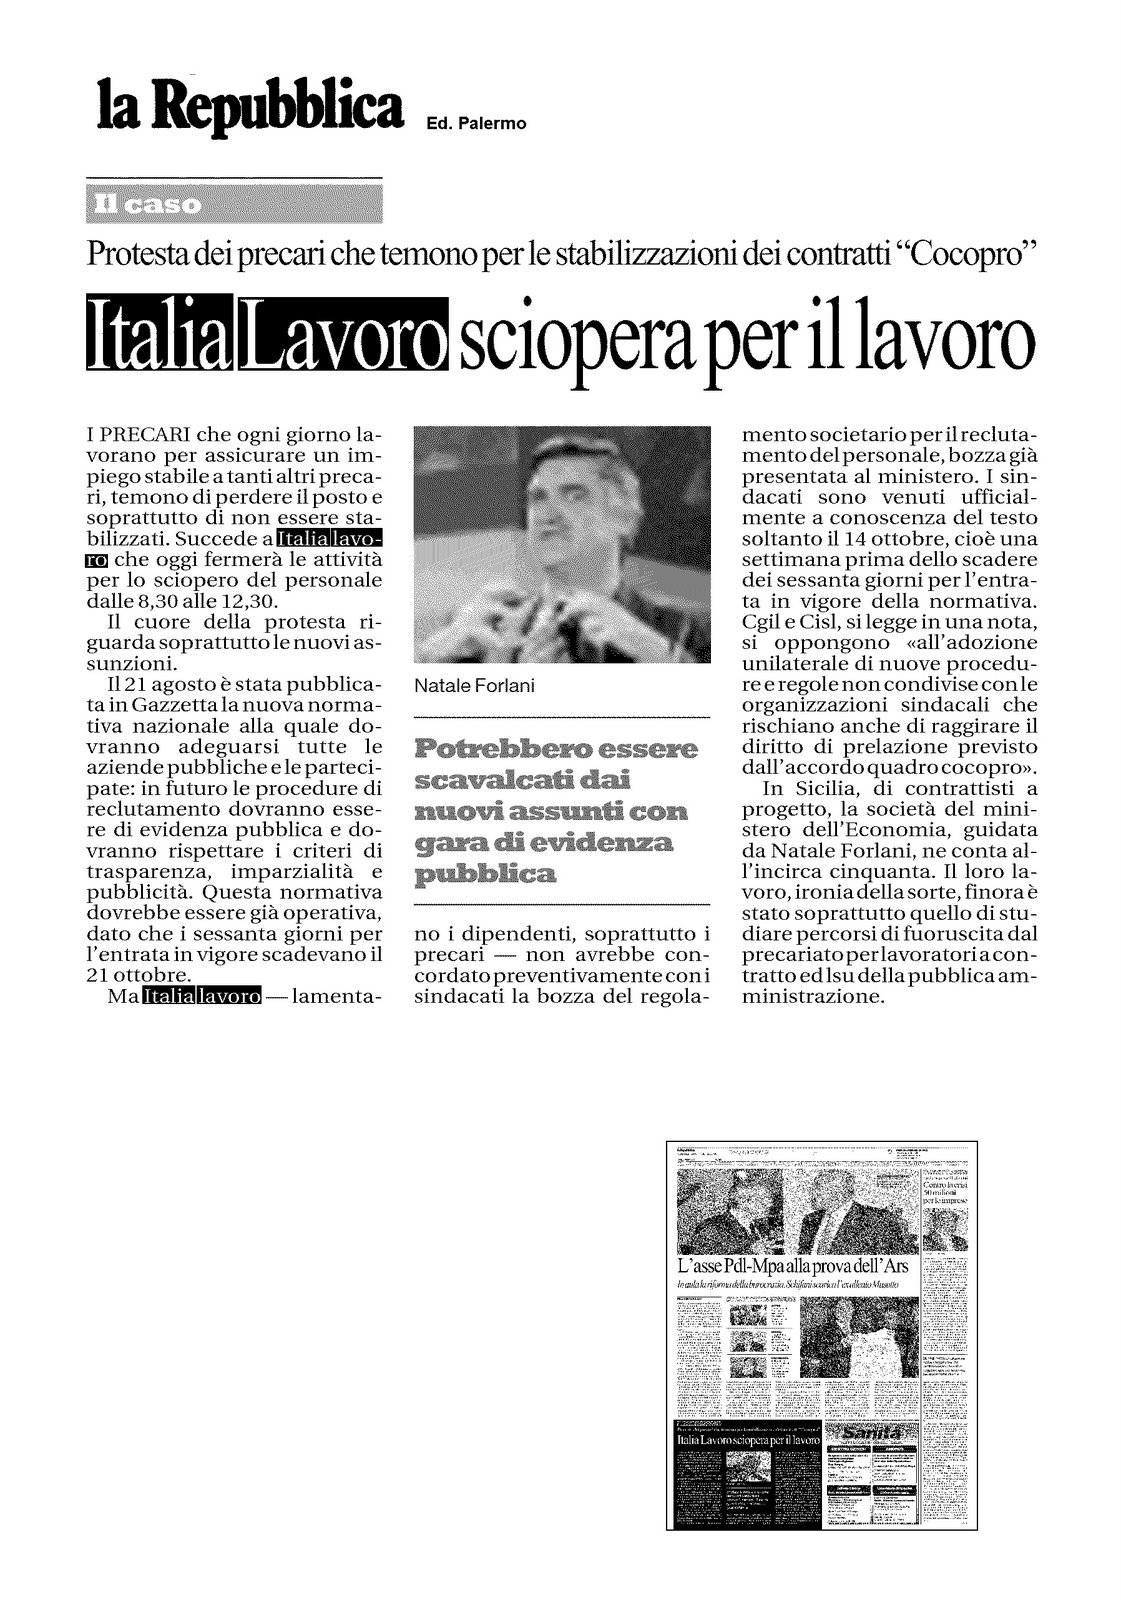 [20081028_paper_Repubblica.jpg]